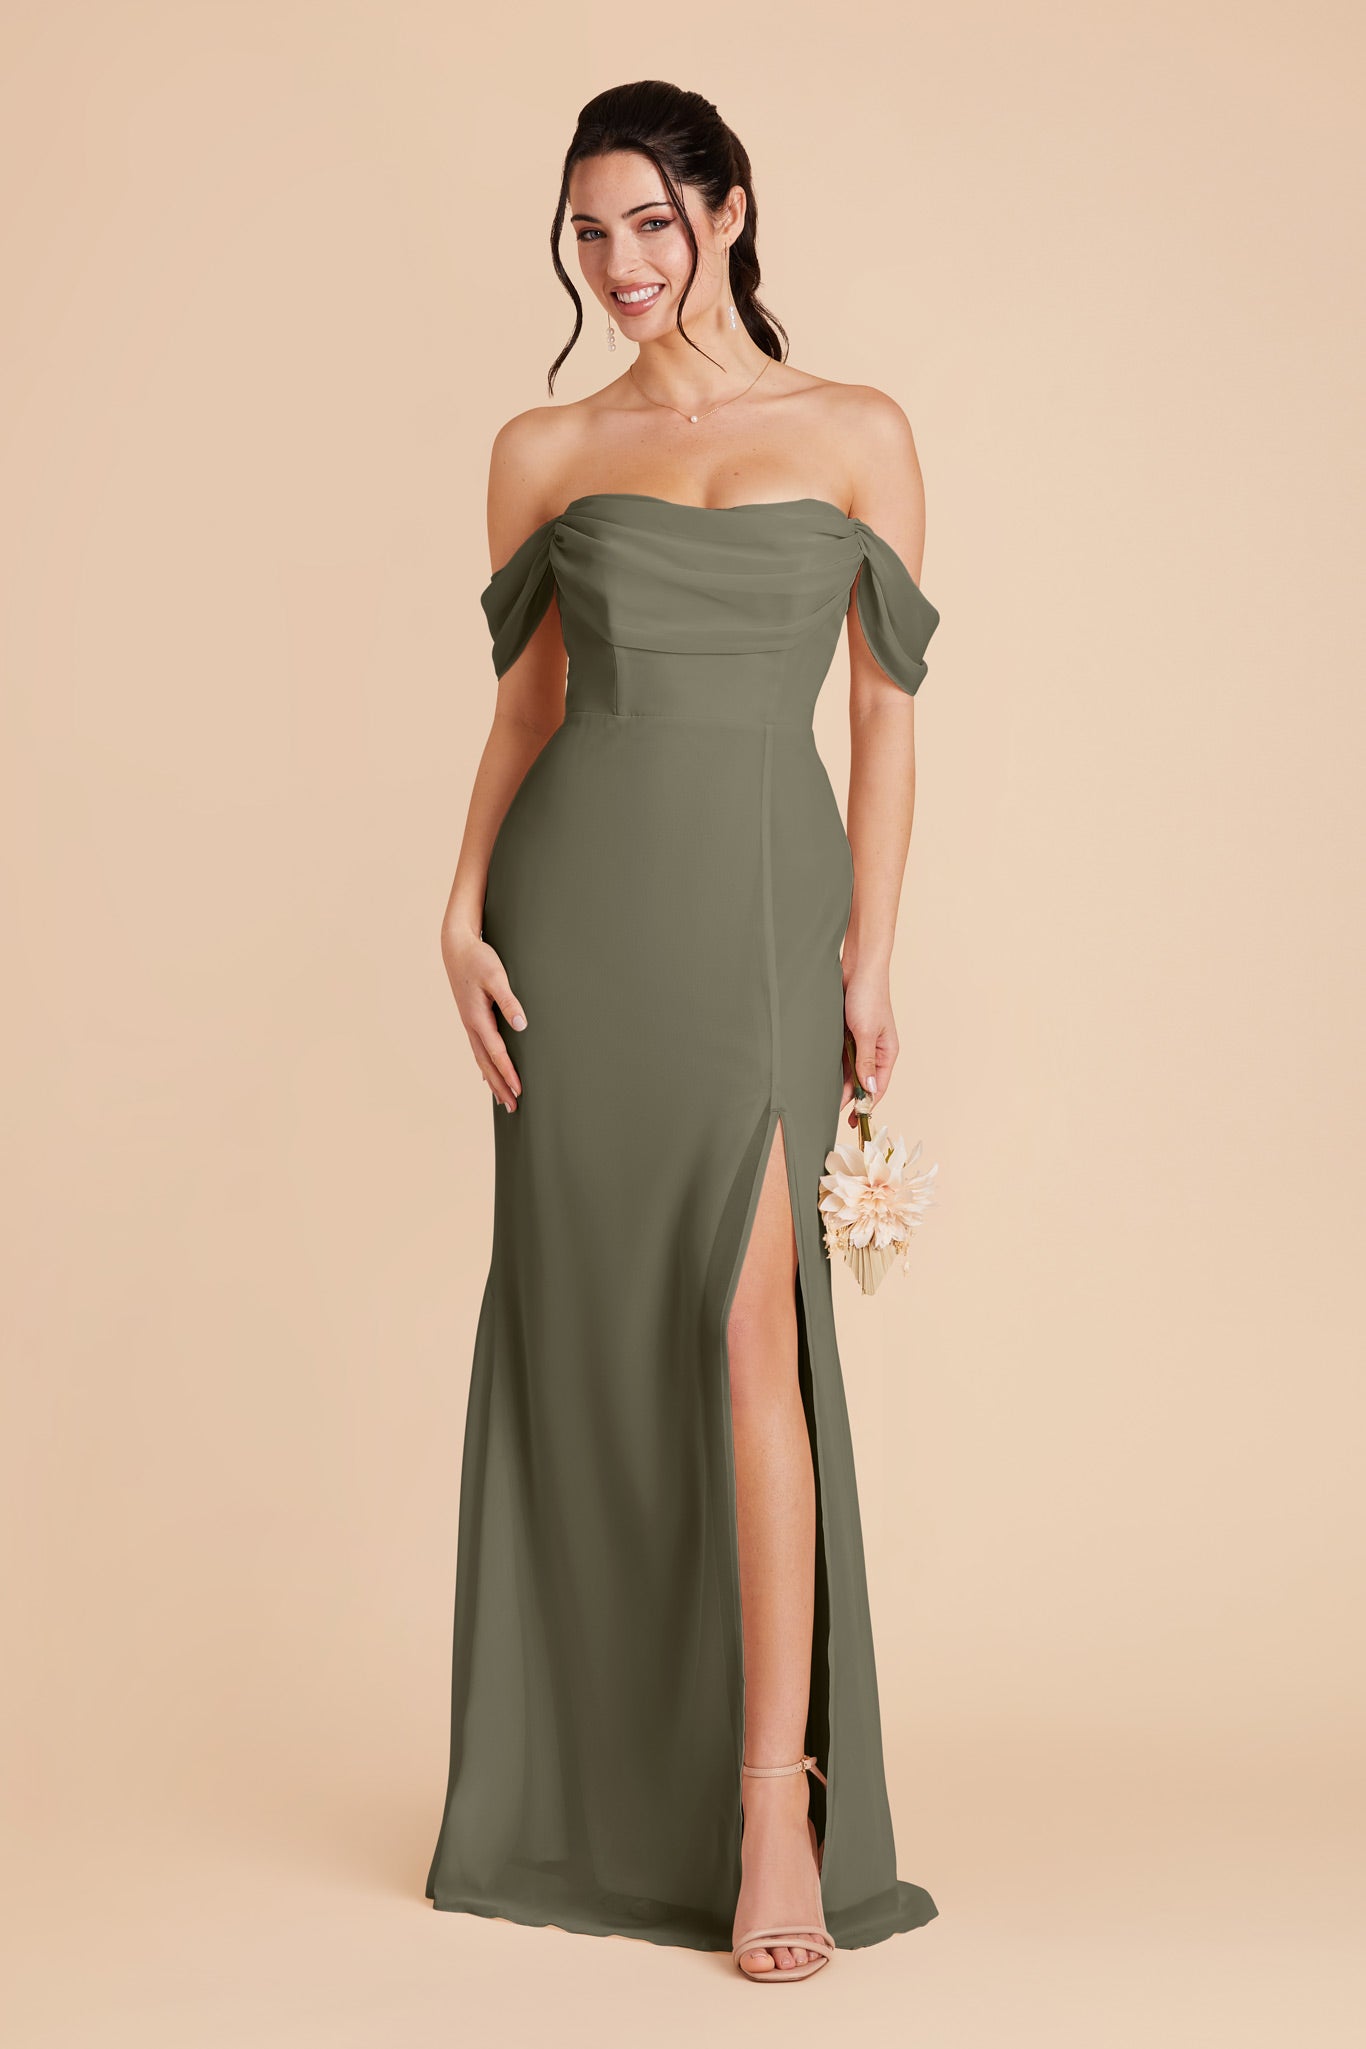 Moss Green Mira Convertible Dress by Birdy Grey